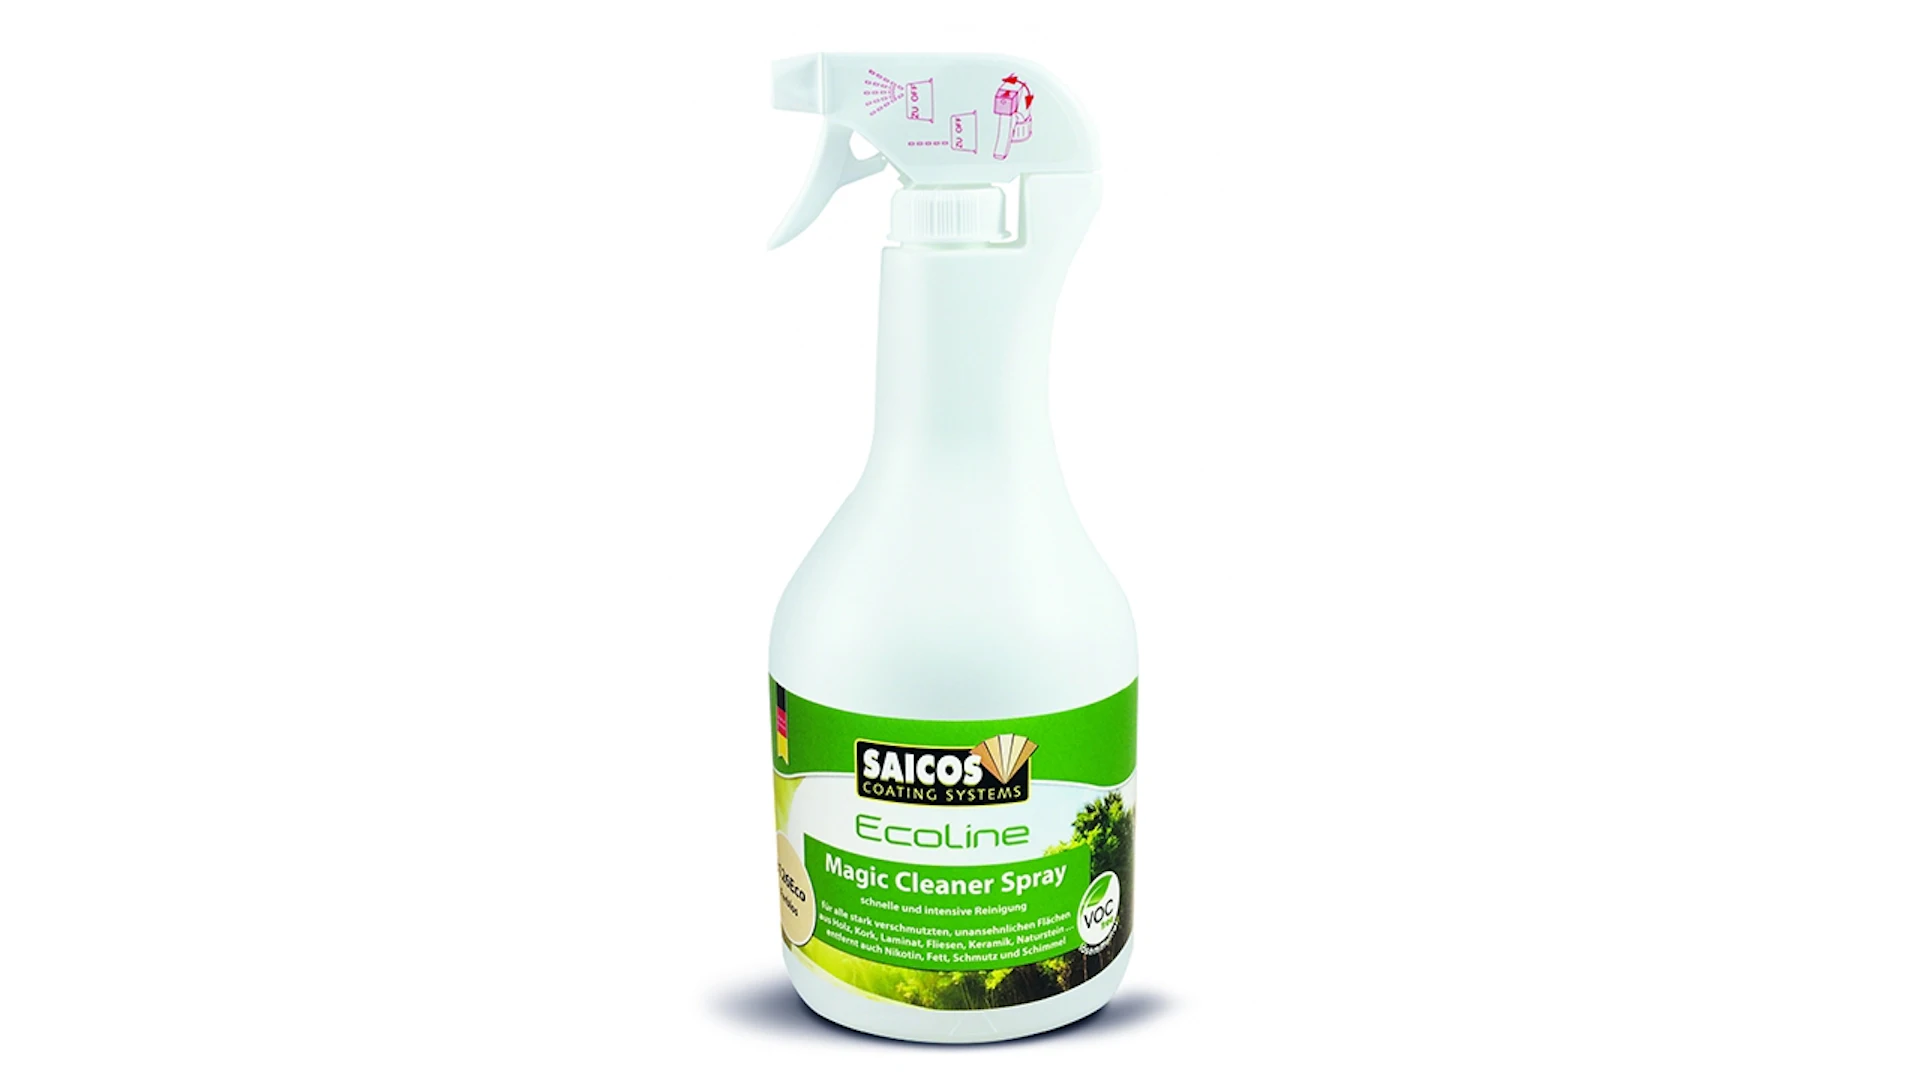 Saicos Ecoline Spray nettoyant magique 1 litre